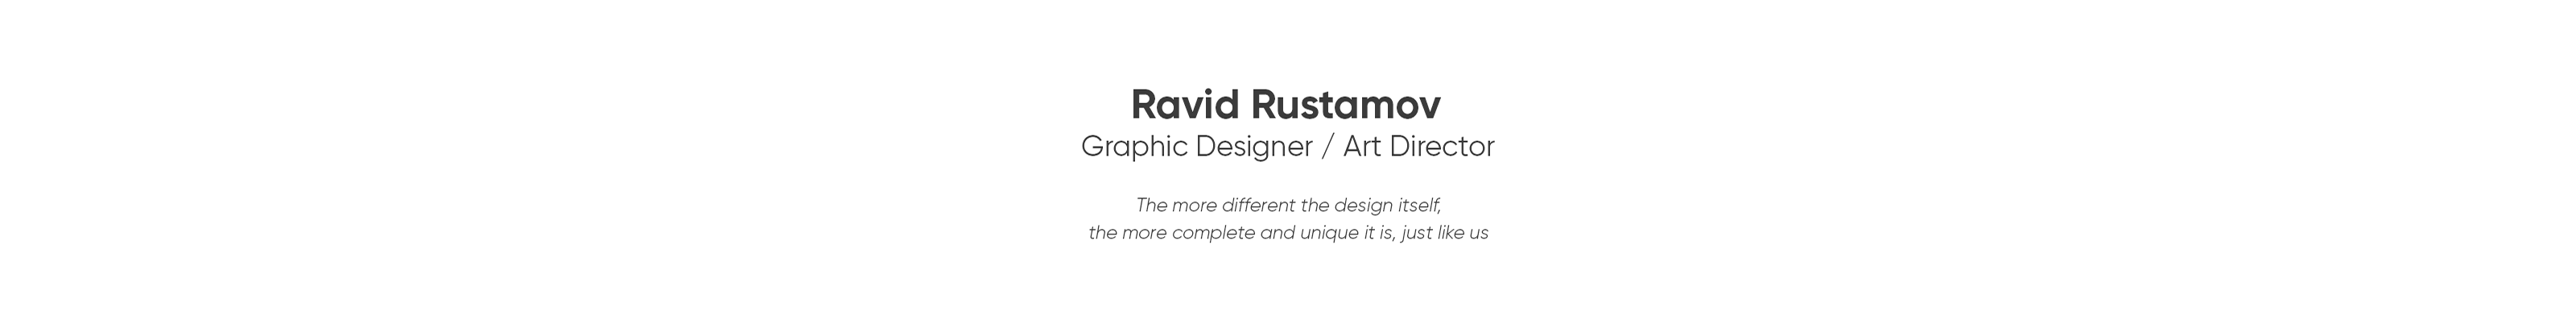 Ravid Rustamov 的個人檔案橫幅